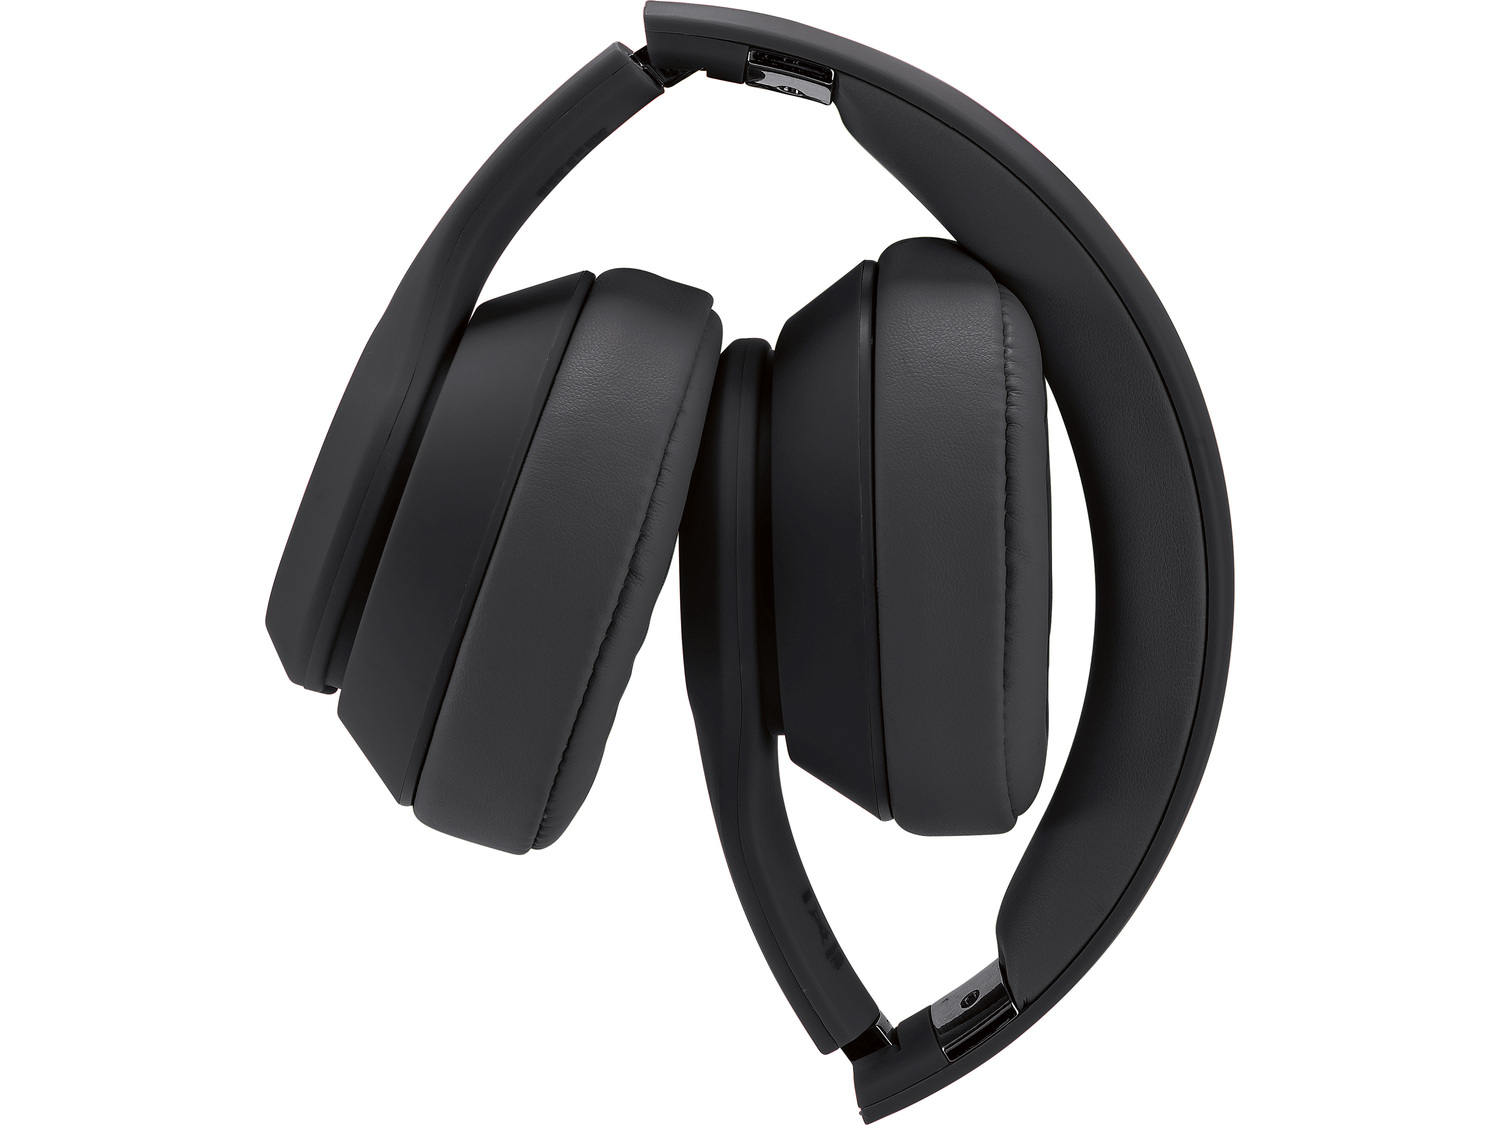 Słuchawki bezprzewodowe z Bluetooth® Silvercrest, cena 119,00 PLN 
- w zestawie: ...